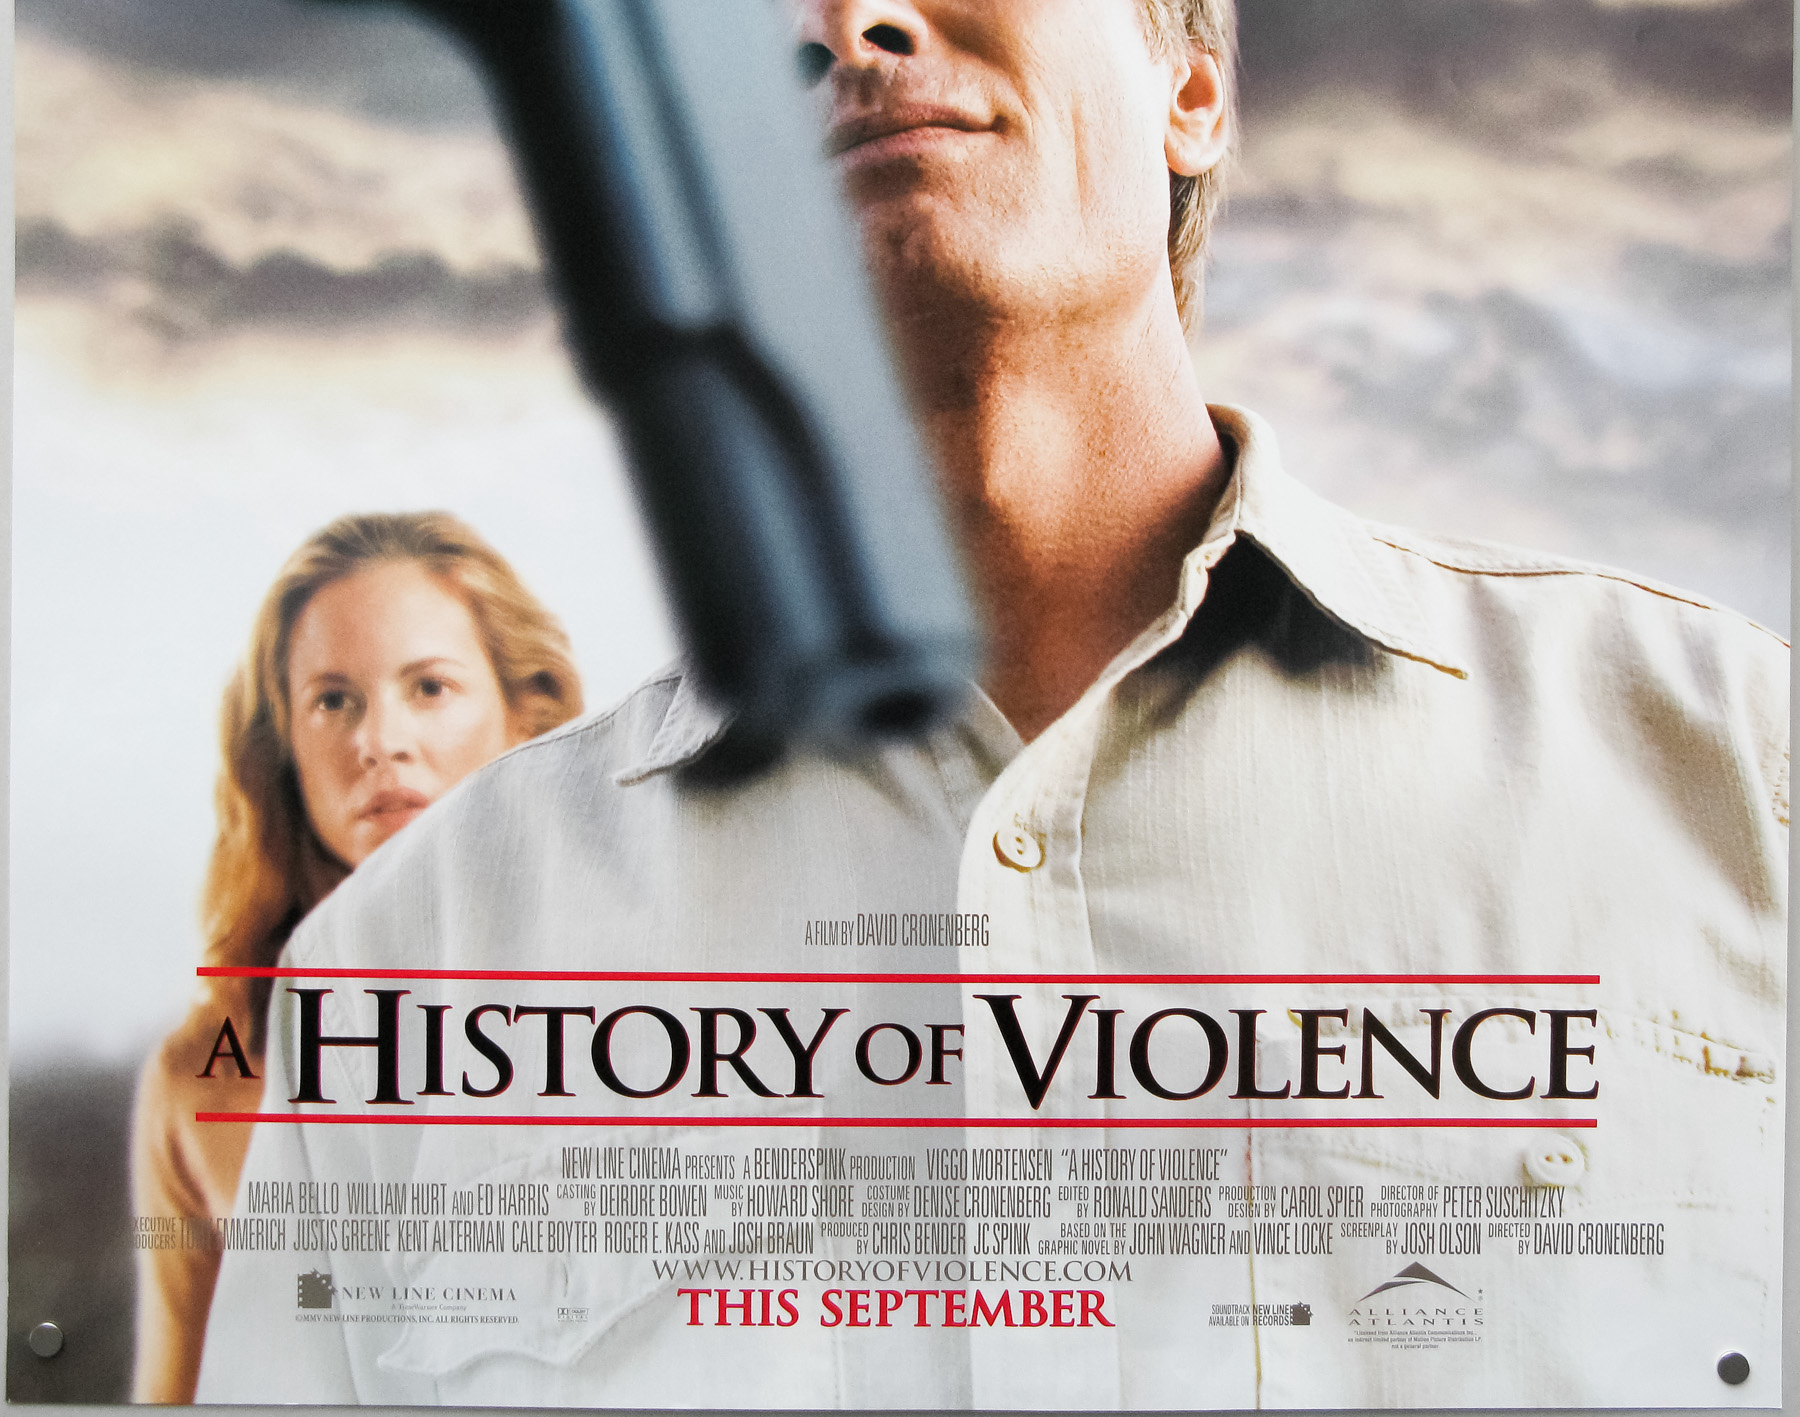 A History of Violence / A History of Violence (2005)